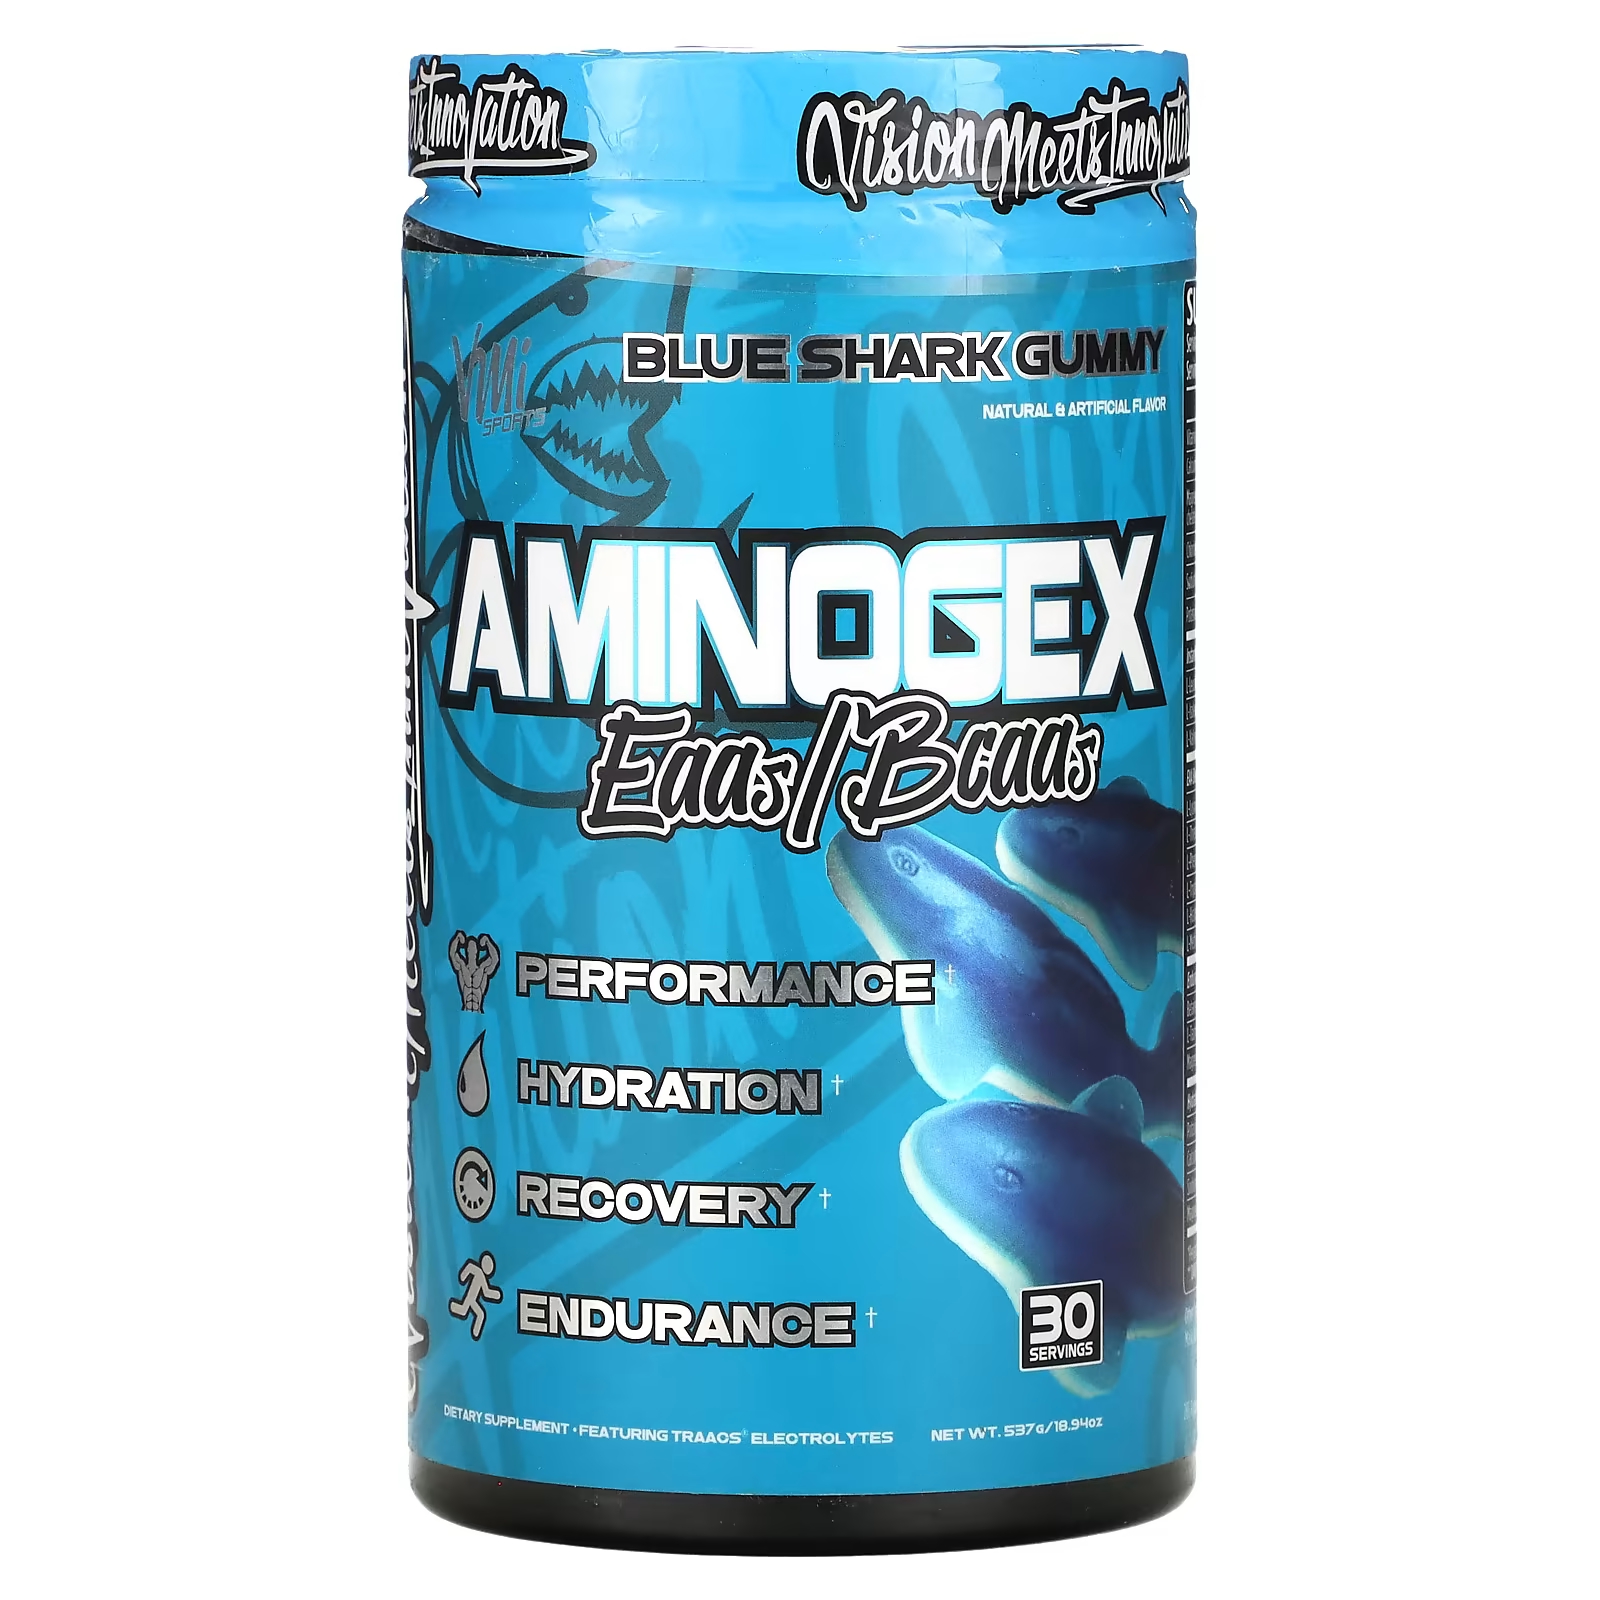 Пищевая добавка с электролитами VMI Sports Aminogex EAA/BCAA Gummy Blue Shark Gummy, 537 г безопасный devops эффективная эксплуатация систем